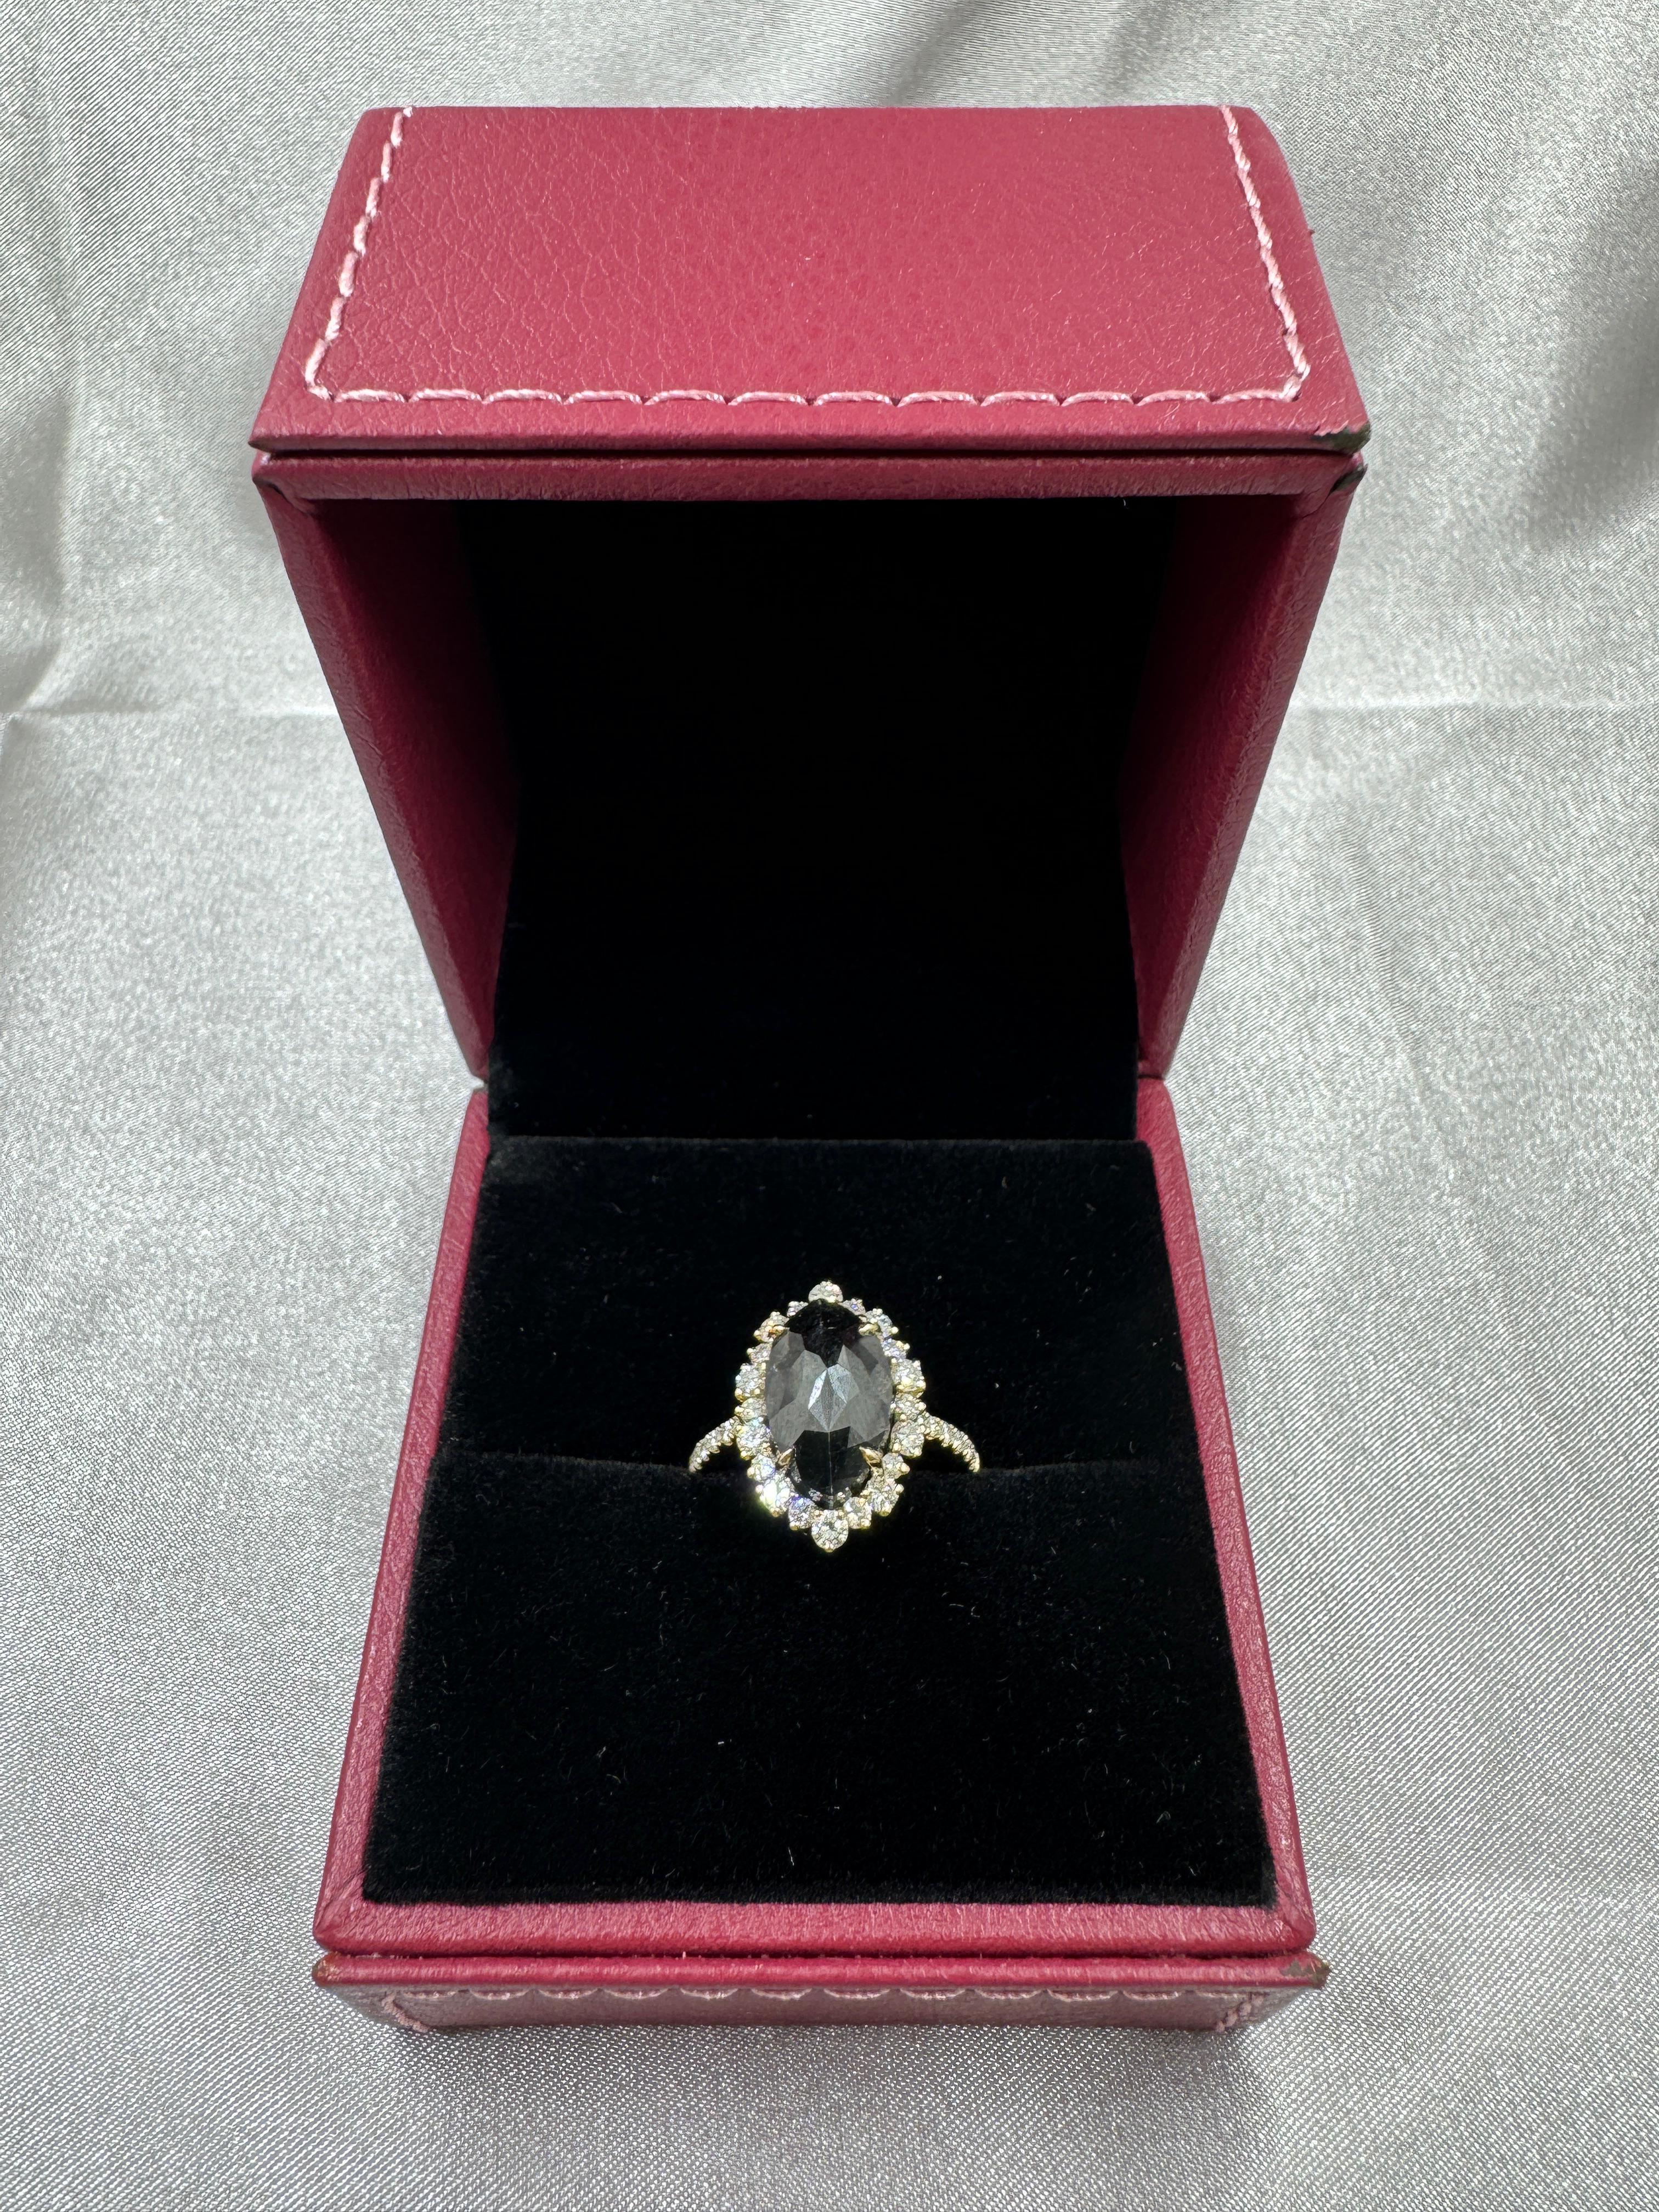 IGI CERTIFIED Vintage 5.70 Carat Black Diamond Ring in 14 Karat Yellow Gold For Sale 3